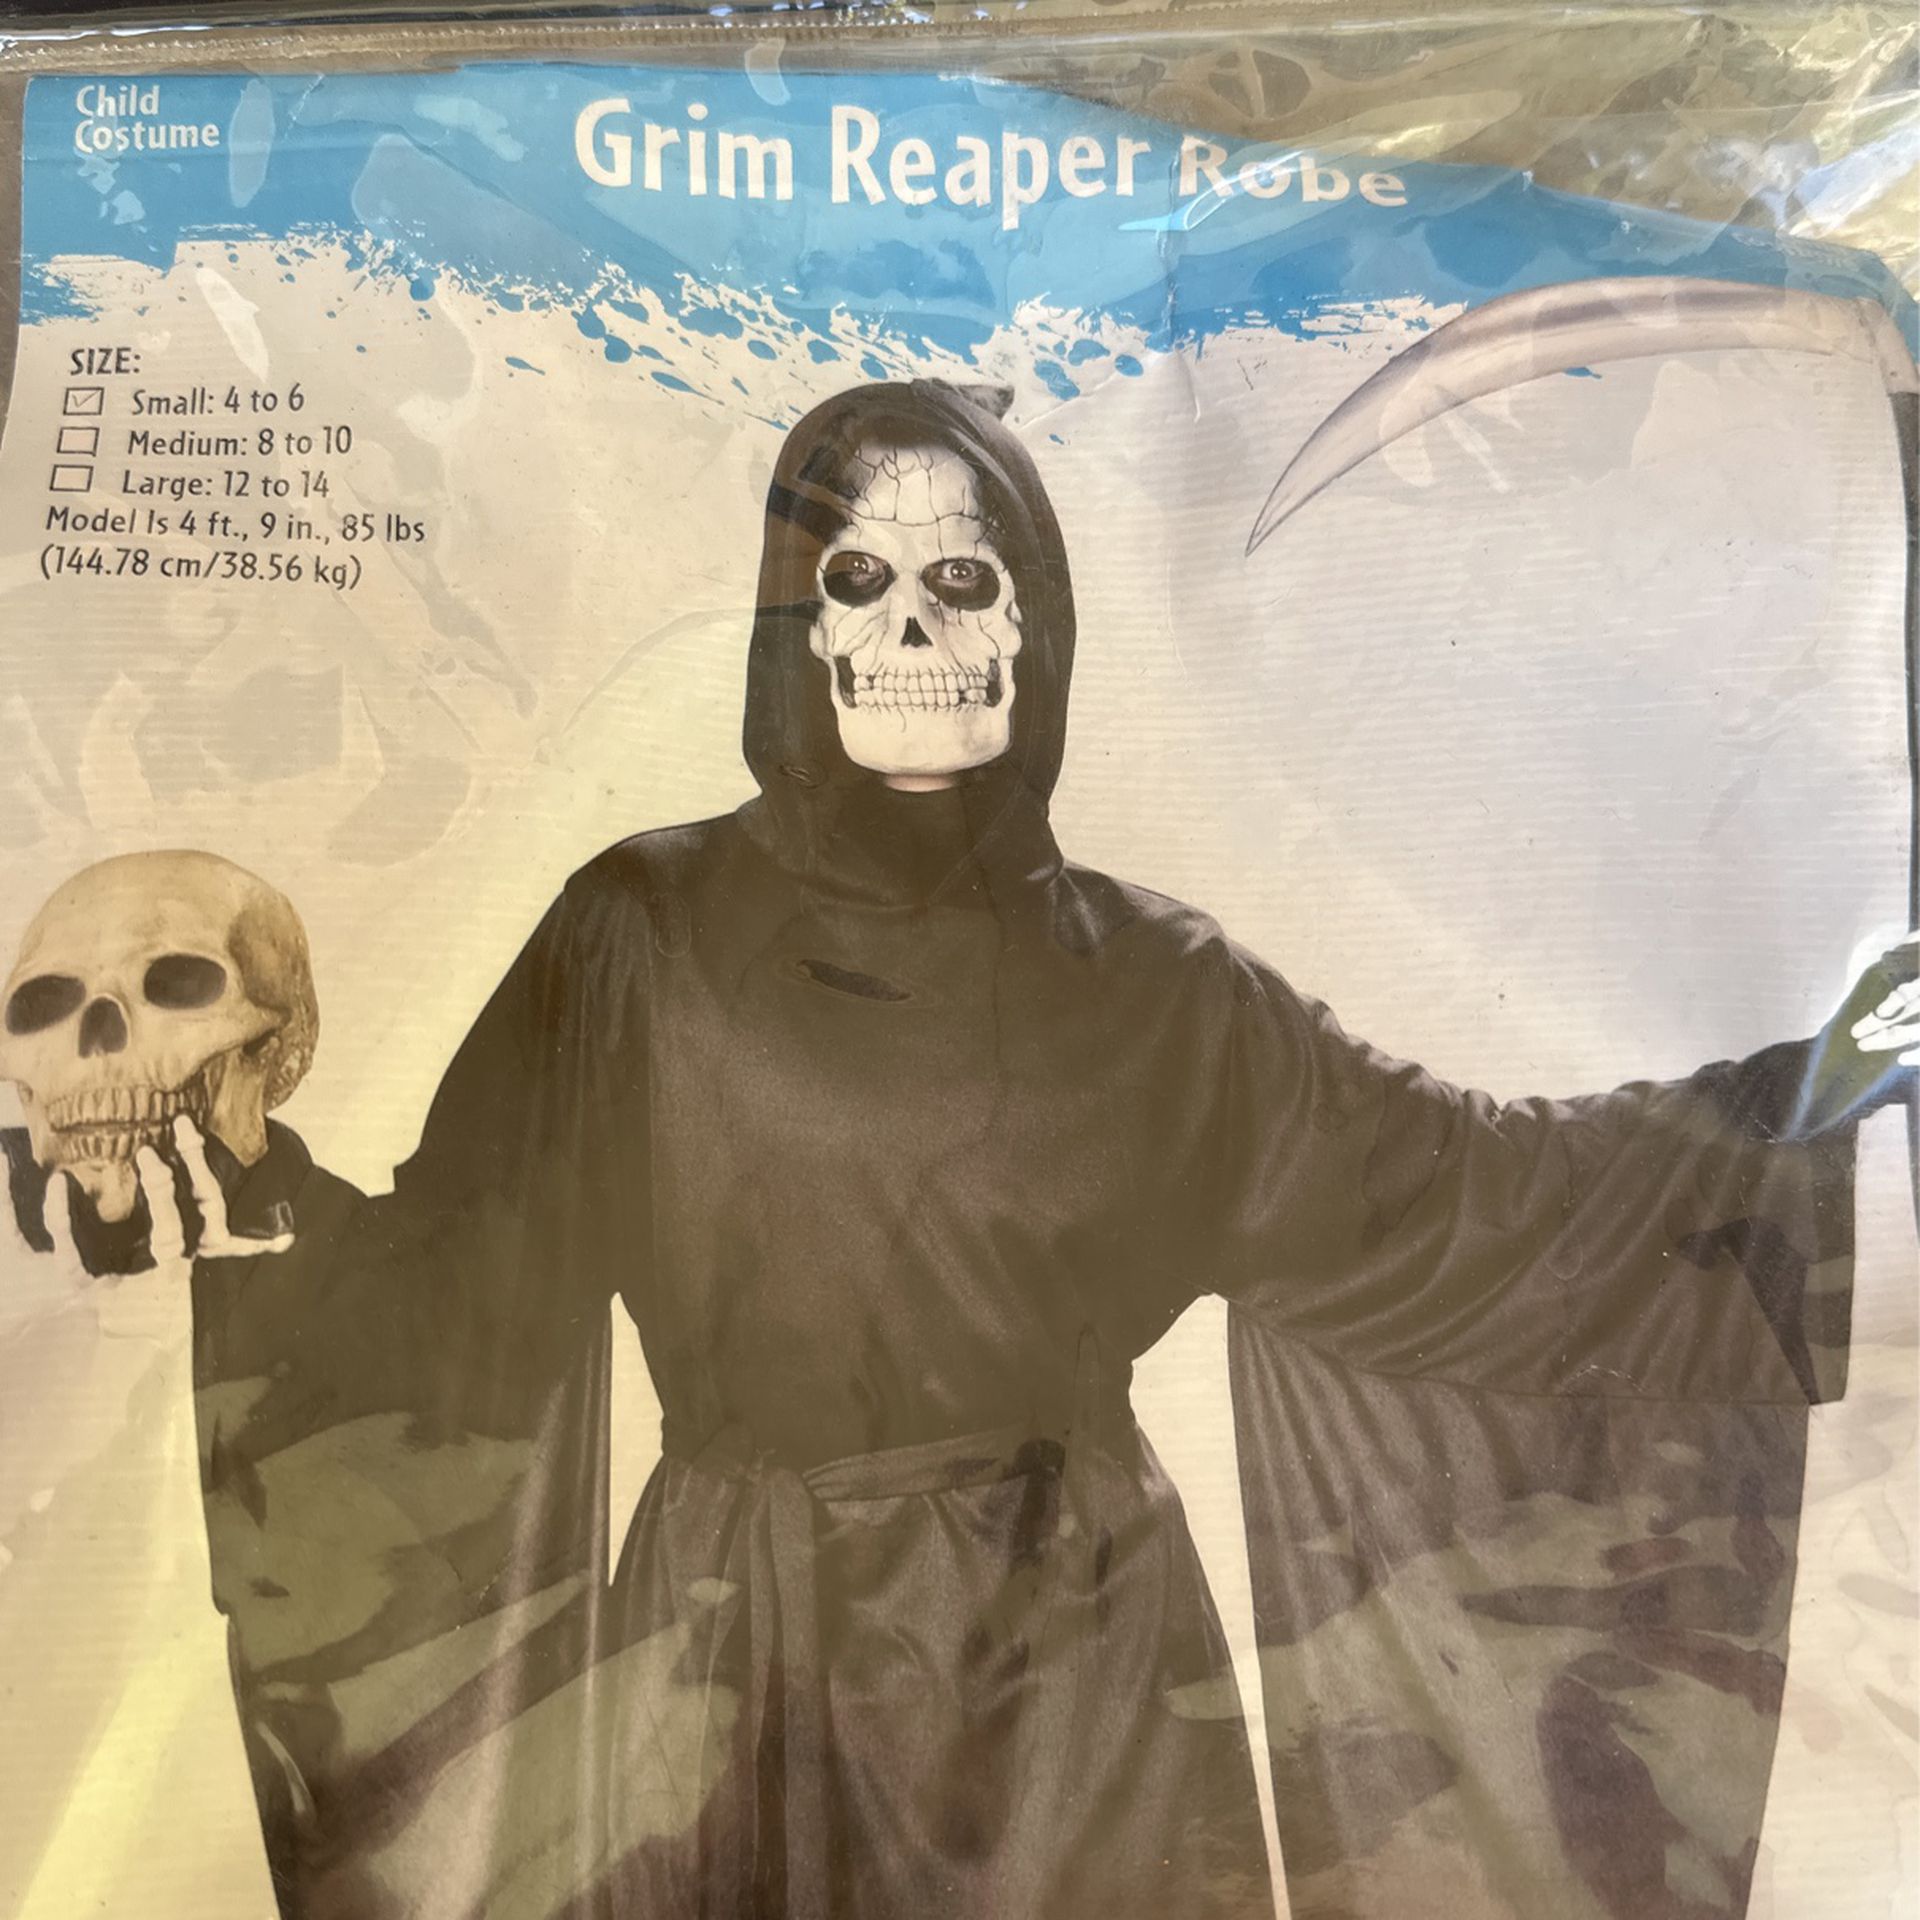 Grim Reaper Robe Costume Size Small(4-6)